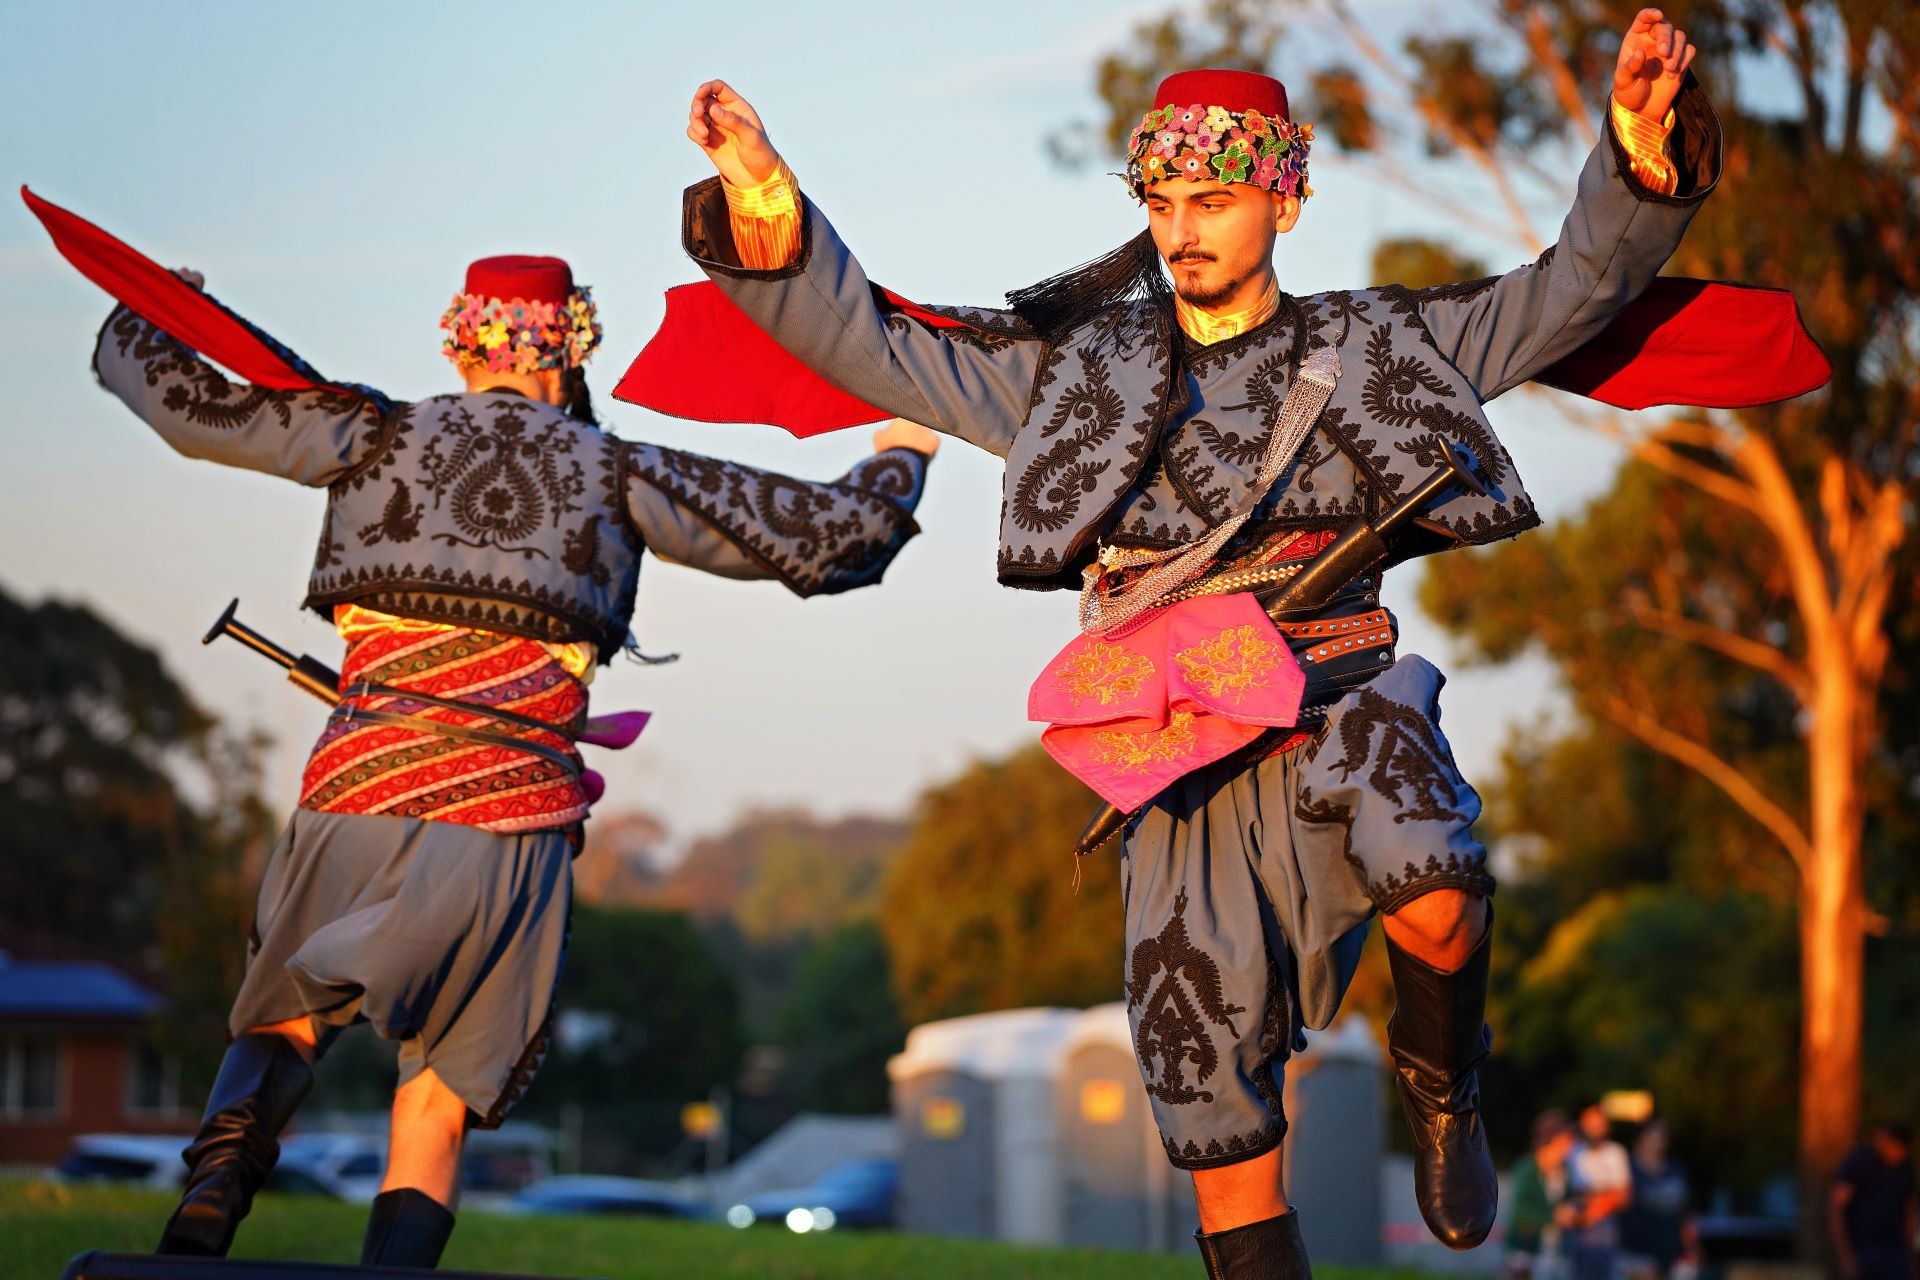 Two Balkan dancers performing in costume